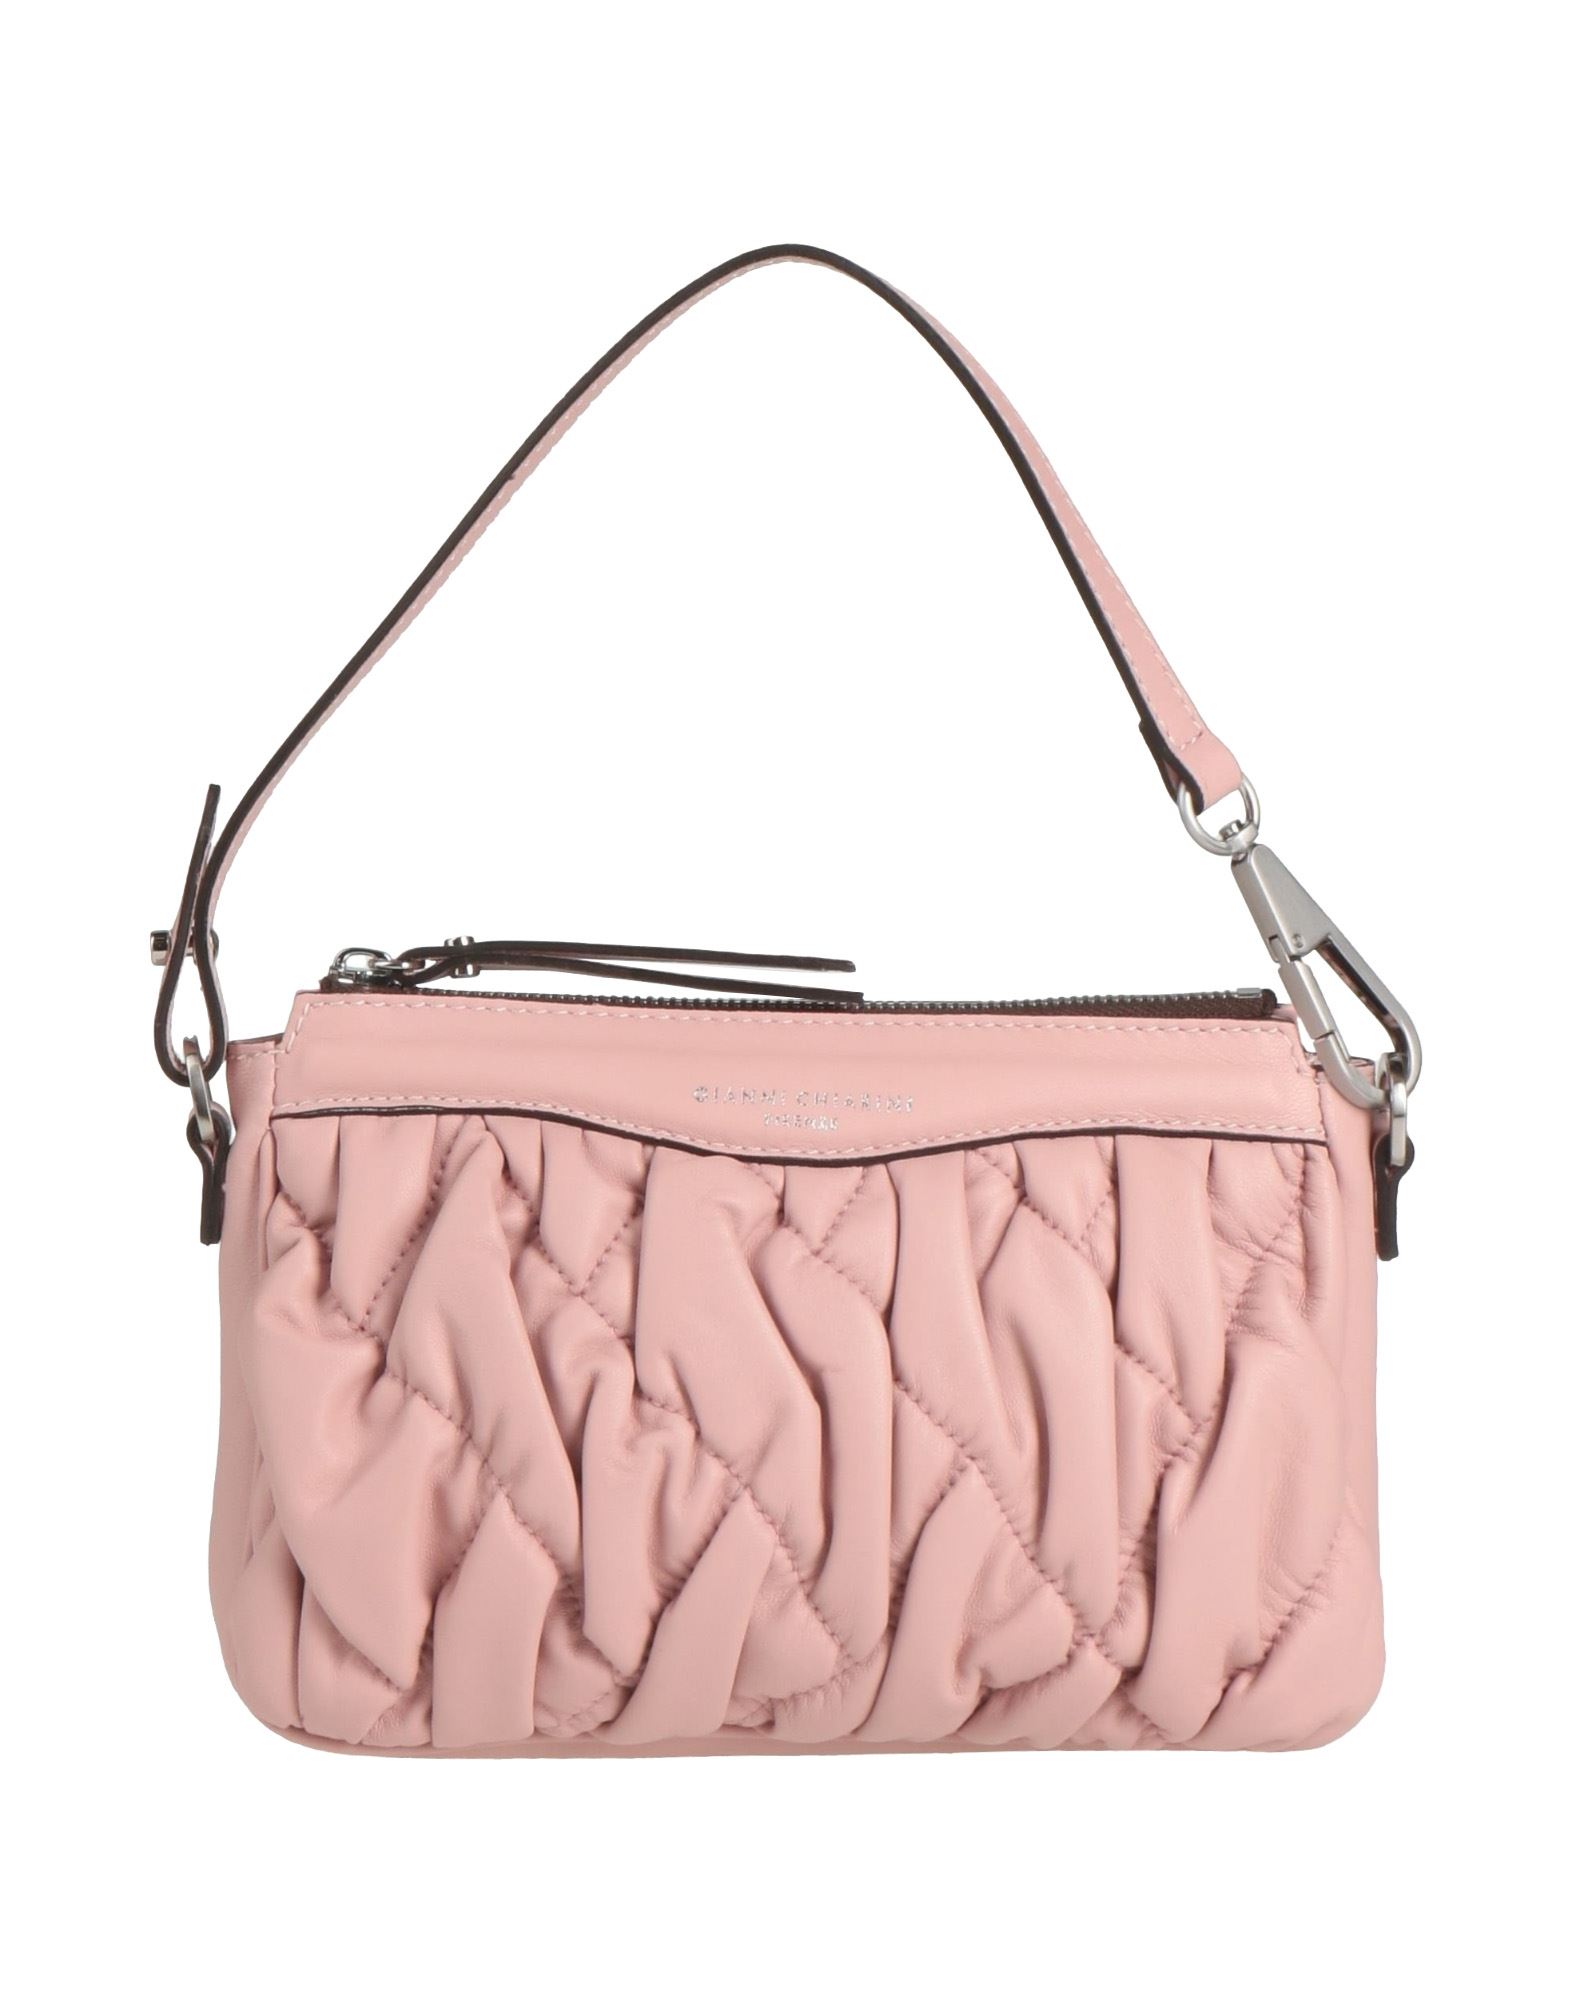 Gianni Chiarini Handbags In Pink